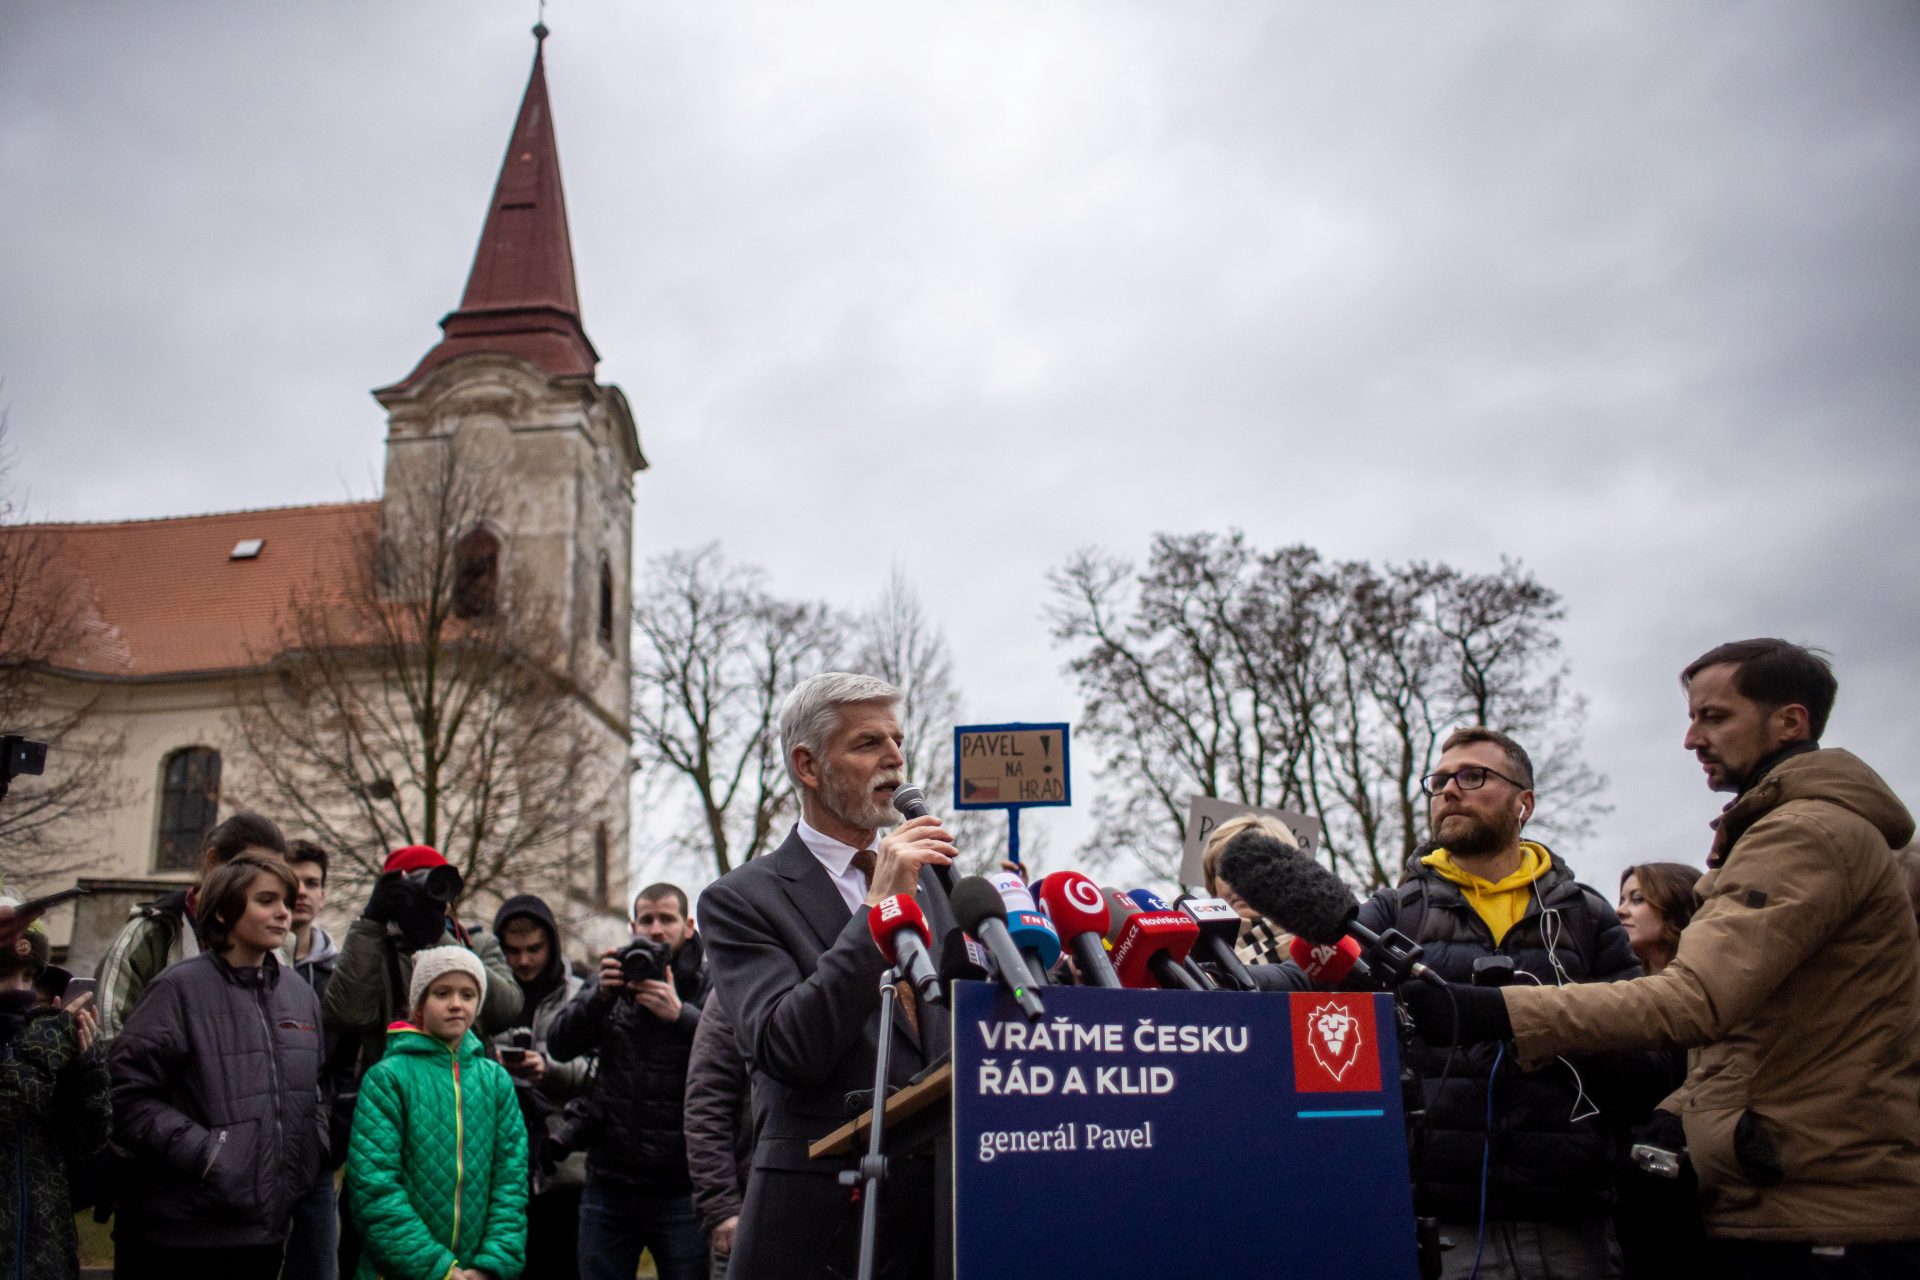 Última jornada de las elecciones presidenciales en República Checa